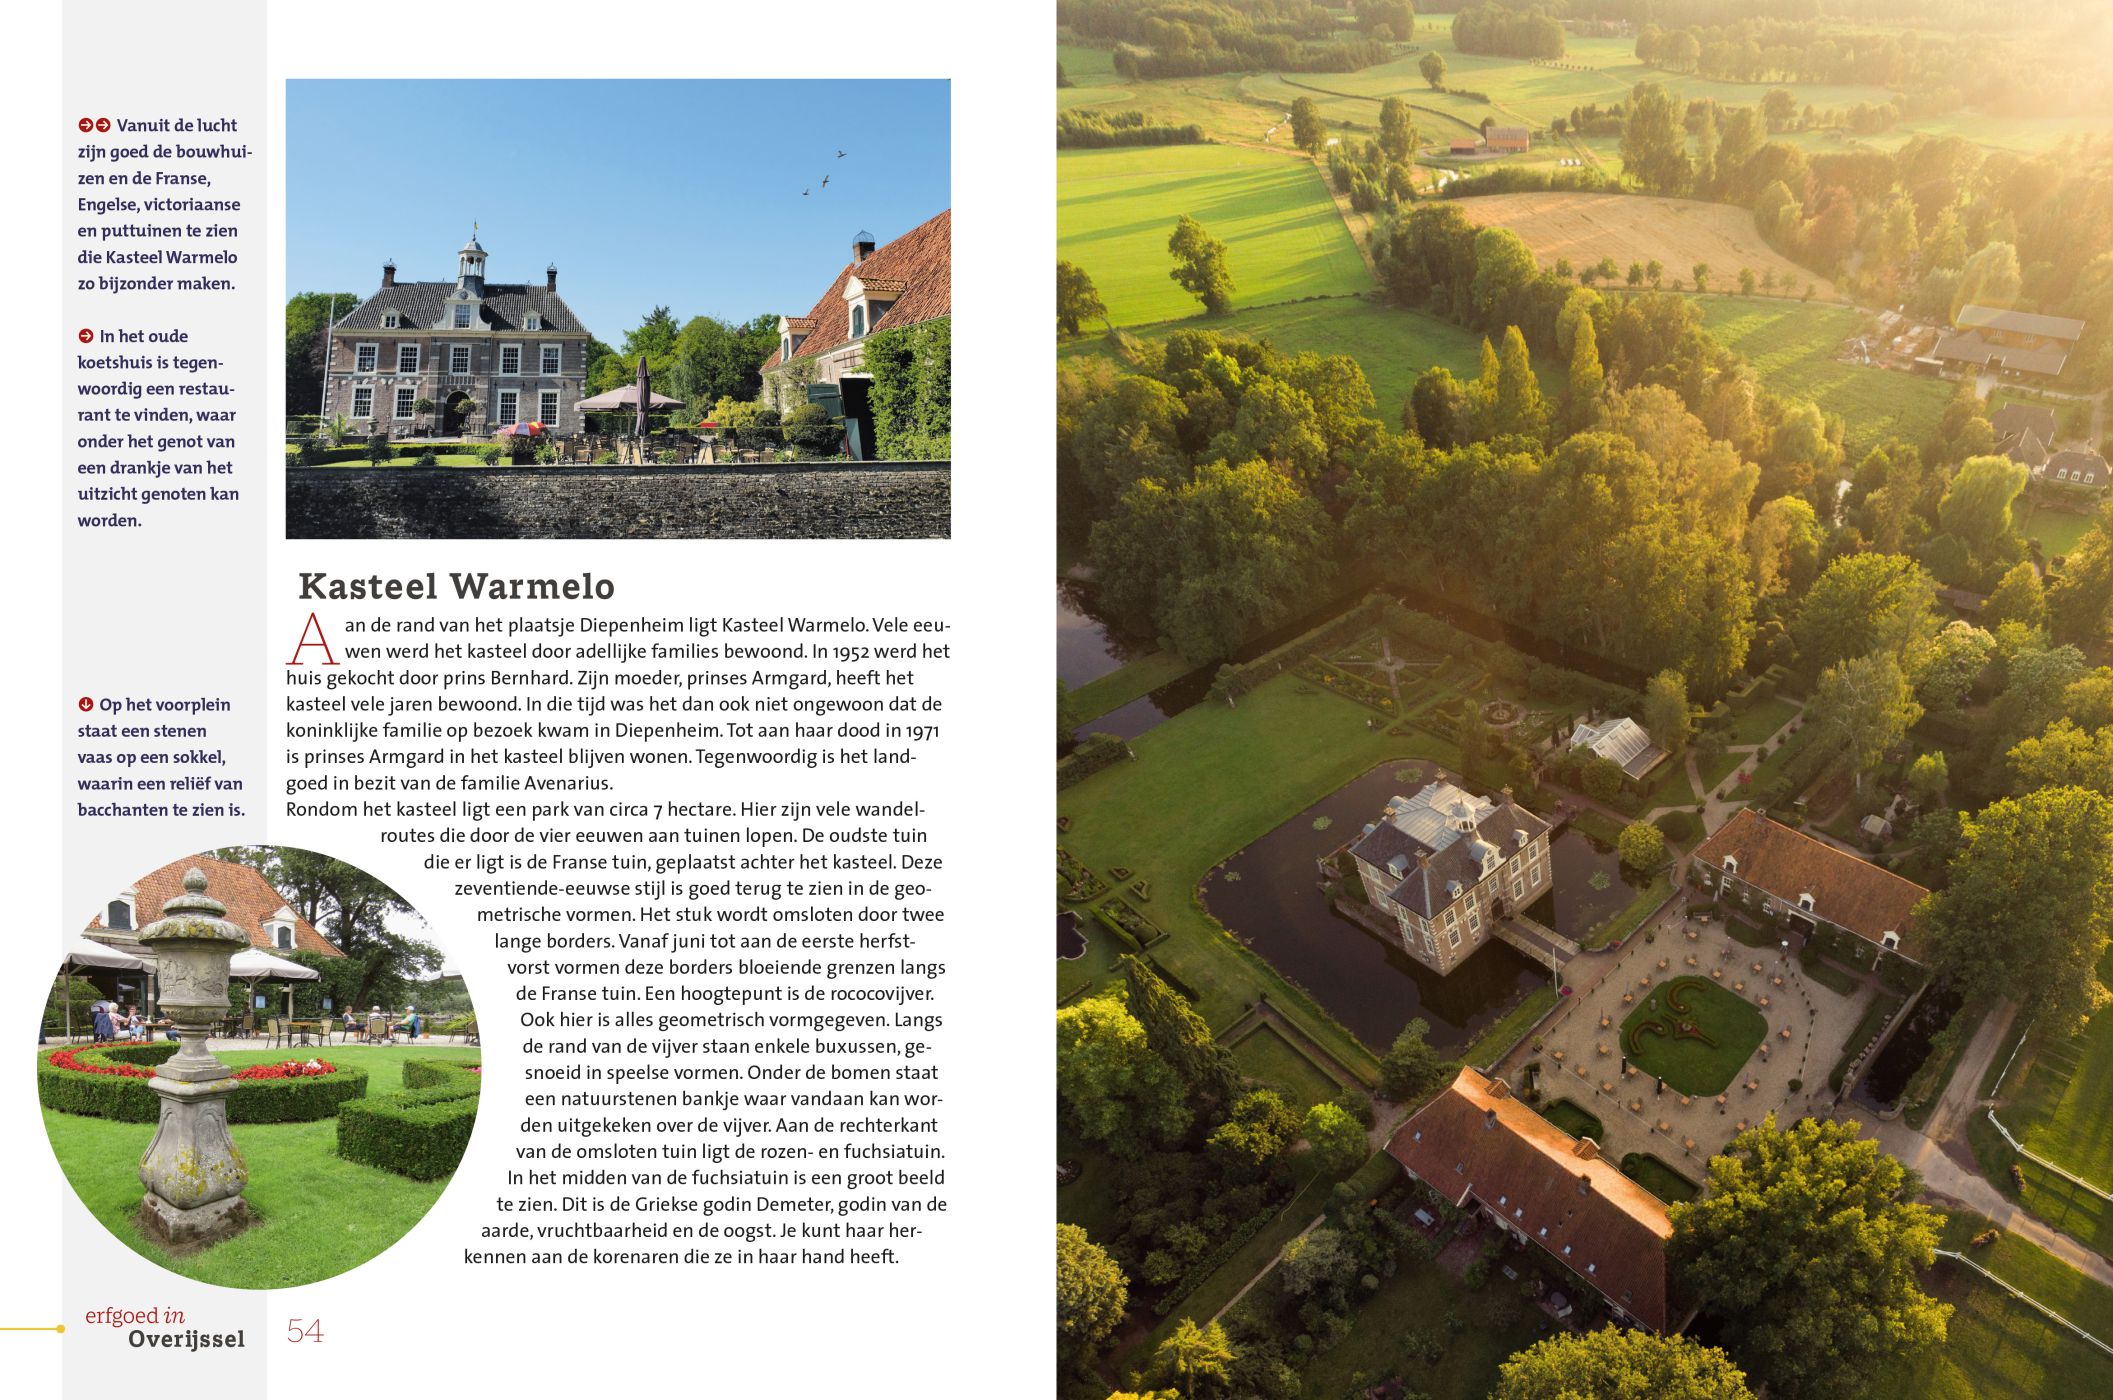 Inkijkexemplaar van het boek: <em>Erfgoed in Overijssel. Havezaten en landgoederen</em> - © Uitgeverij Matrijs